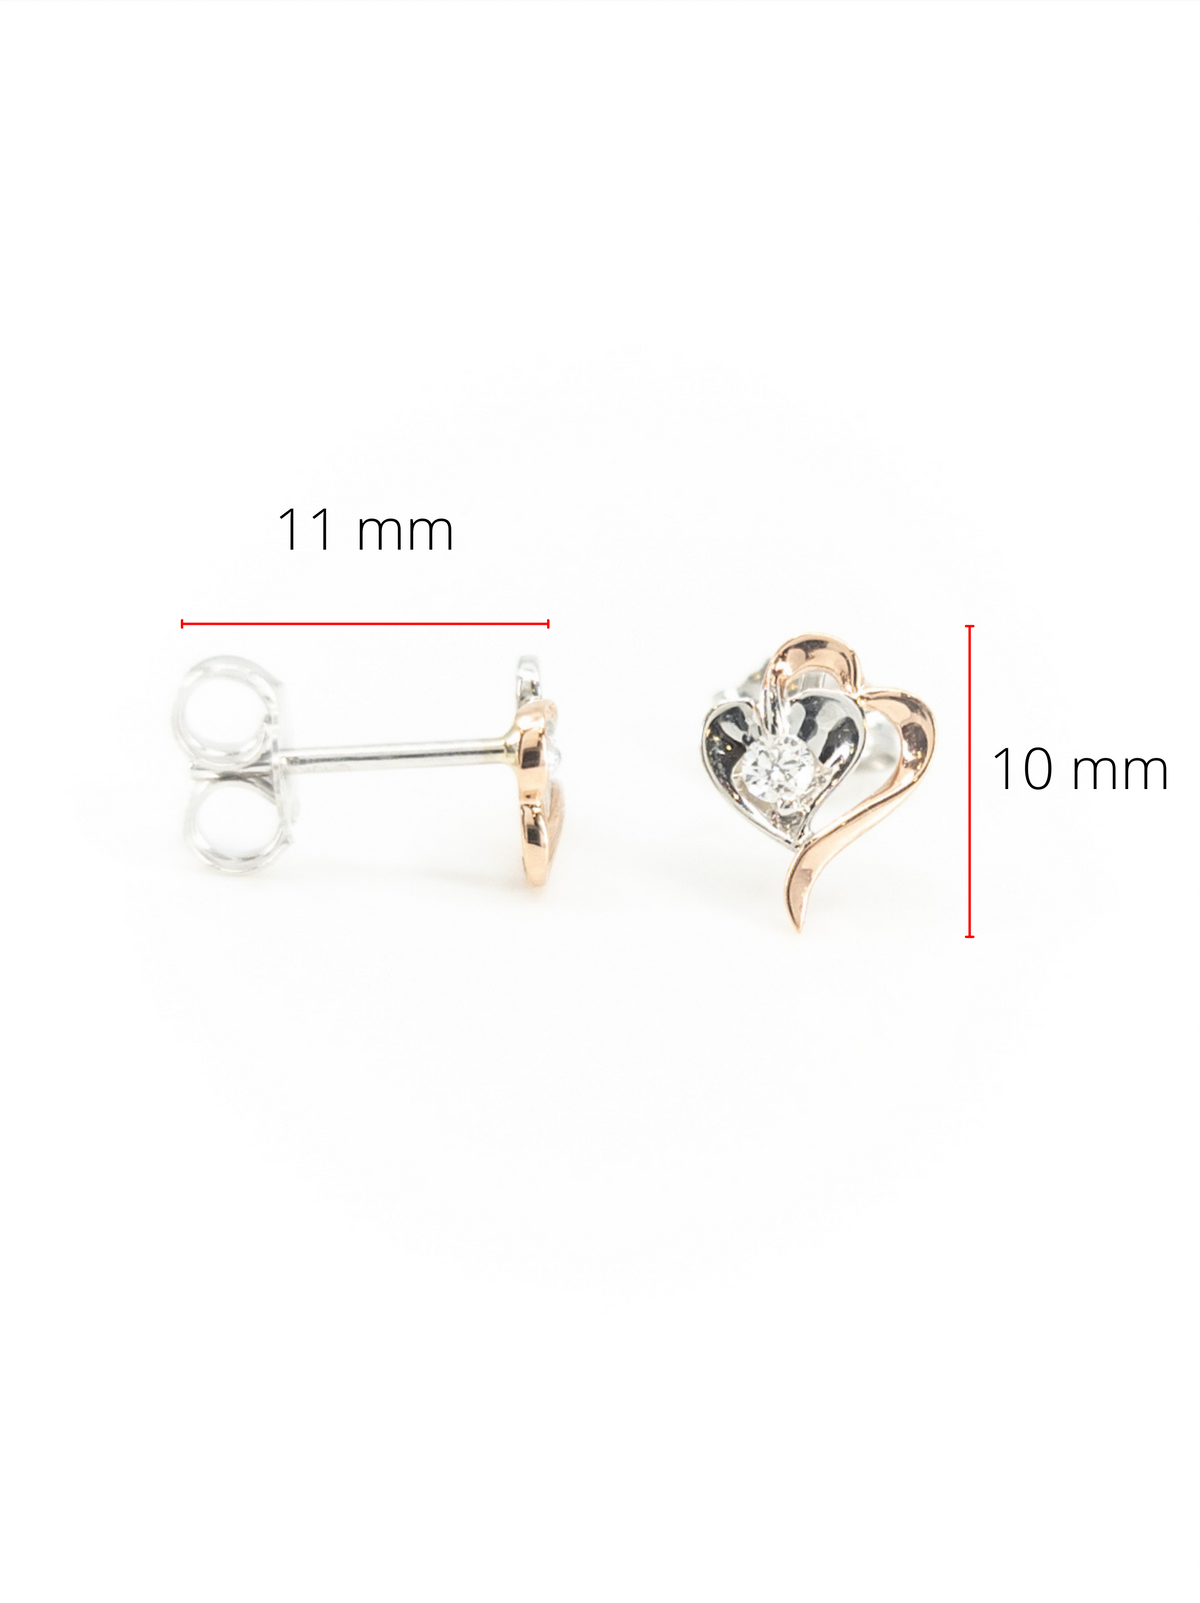 Pendientes de corazón de diamantes canadienses de talla redonda de 0,08 quilates en oro blanco y rosa de 10 quilates